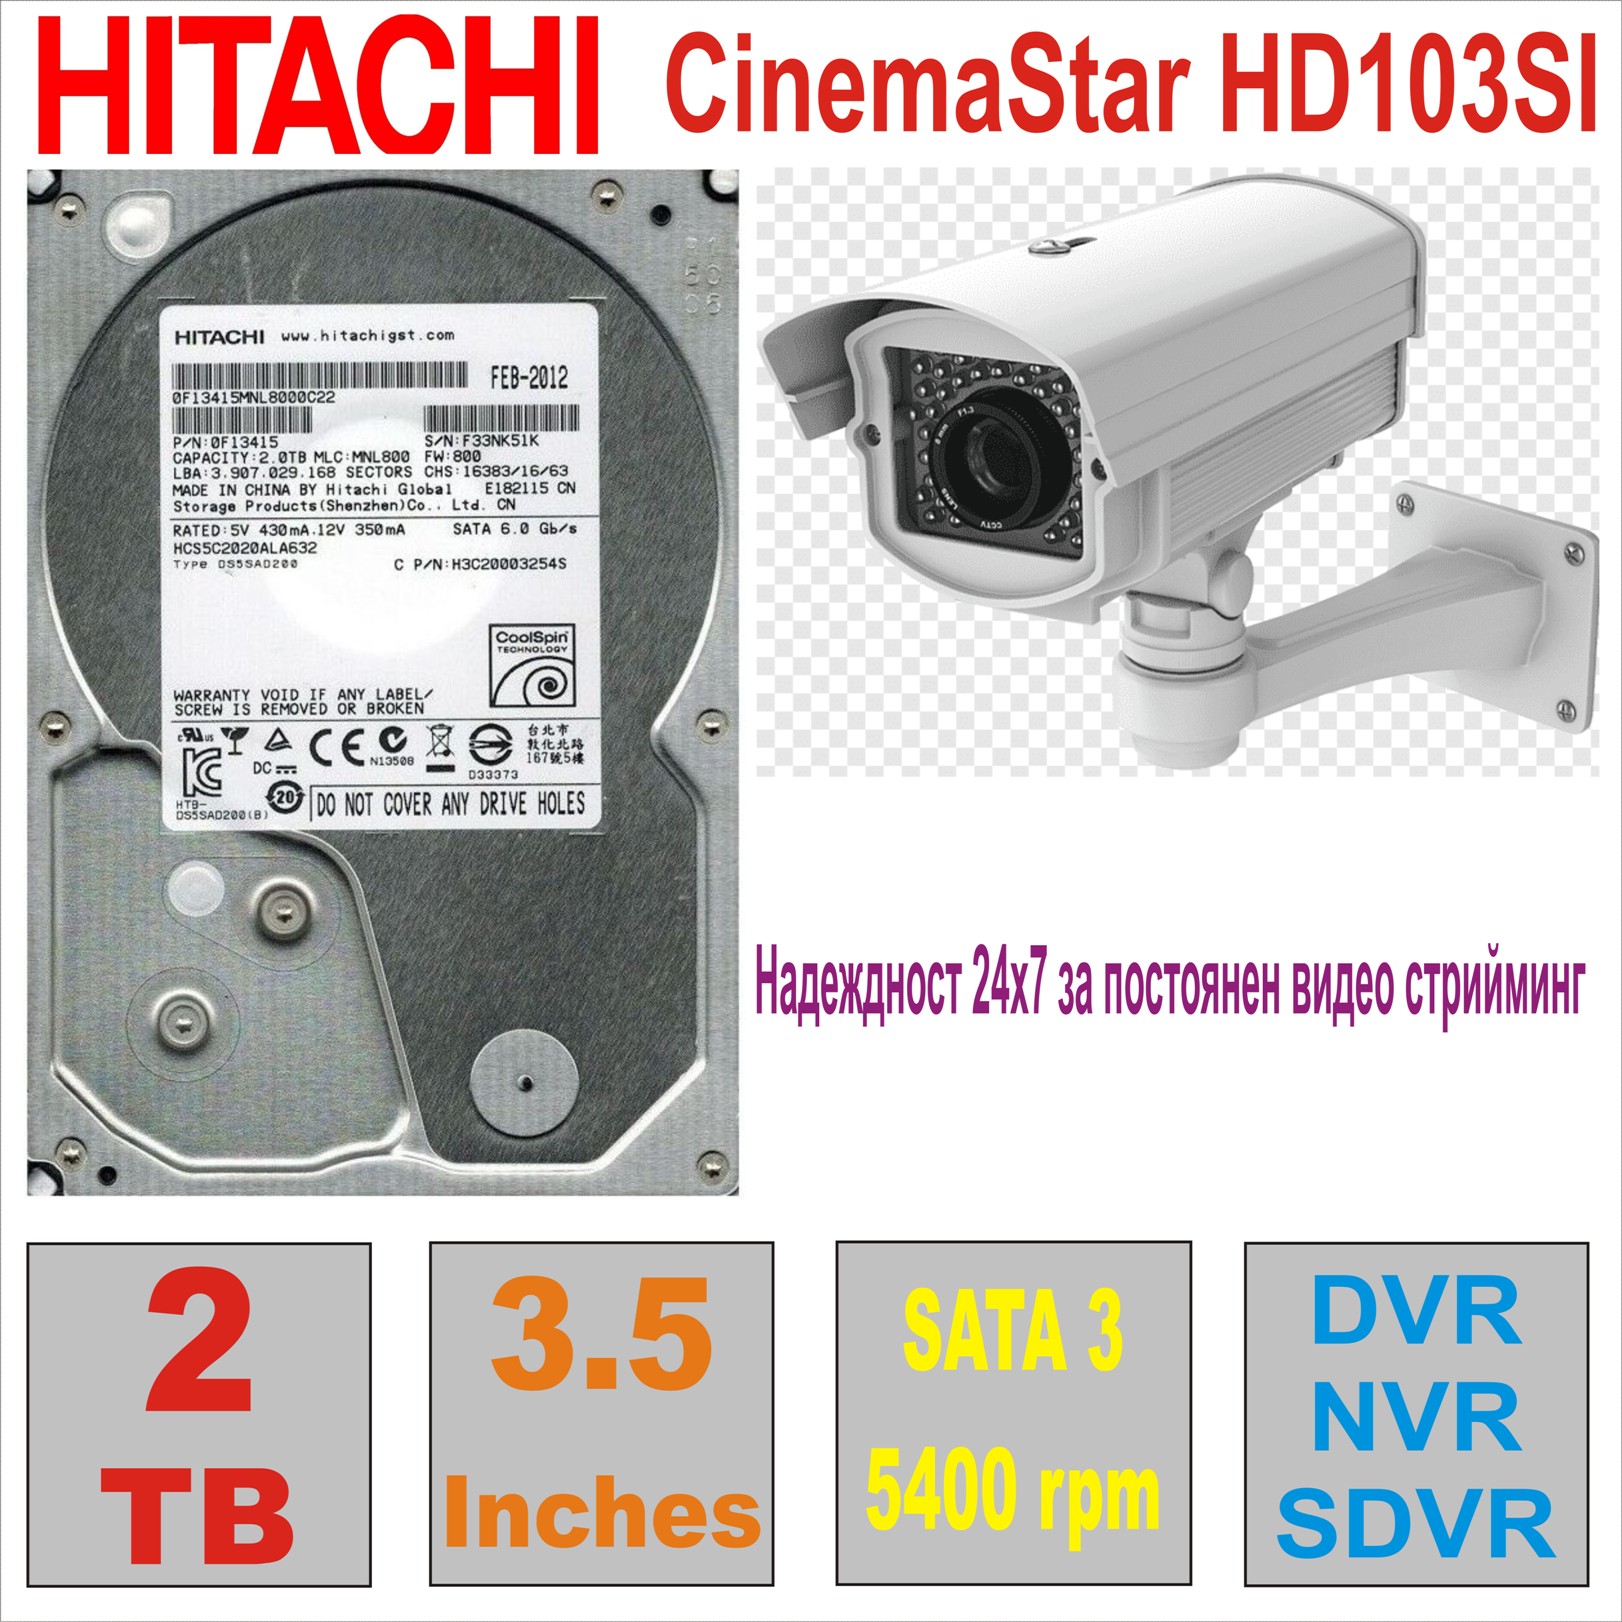 HDD 3.5` 2 TB HITACHI CinemaStar HCS5C2020ALA632